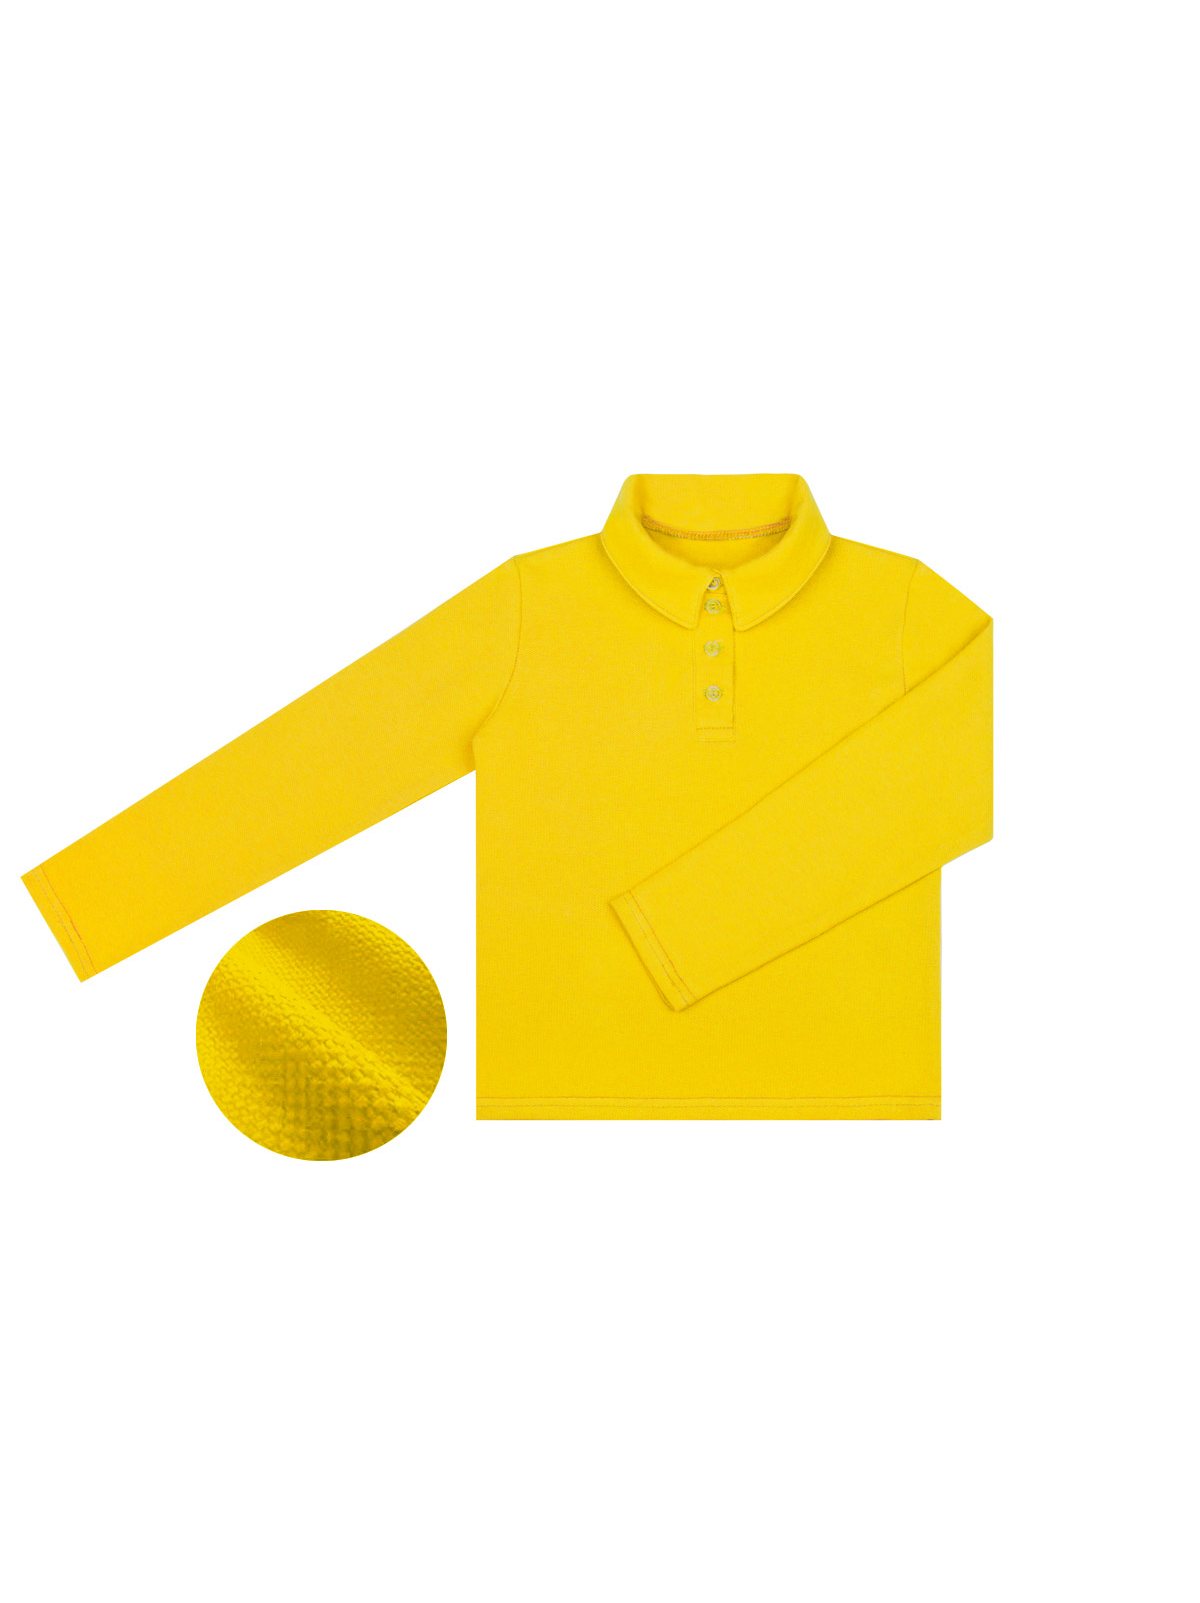 Купить желтые мальчику. Желтые рубашки для мальчиков. Рубашка детская желтая. Рубашка для мальчика желтого цвета. Желтое поло с длинным рукавом.